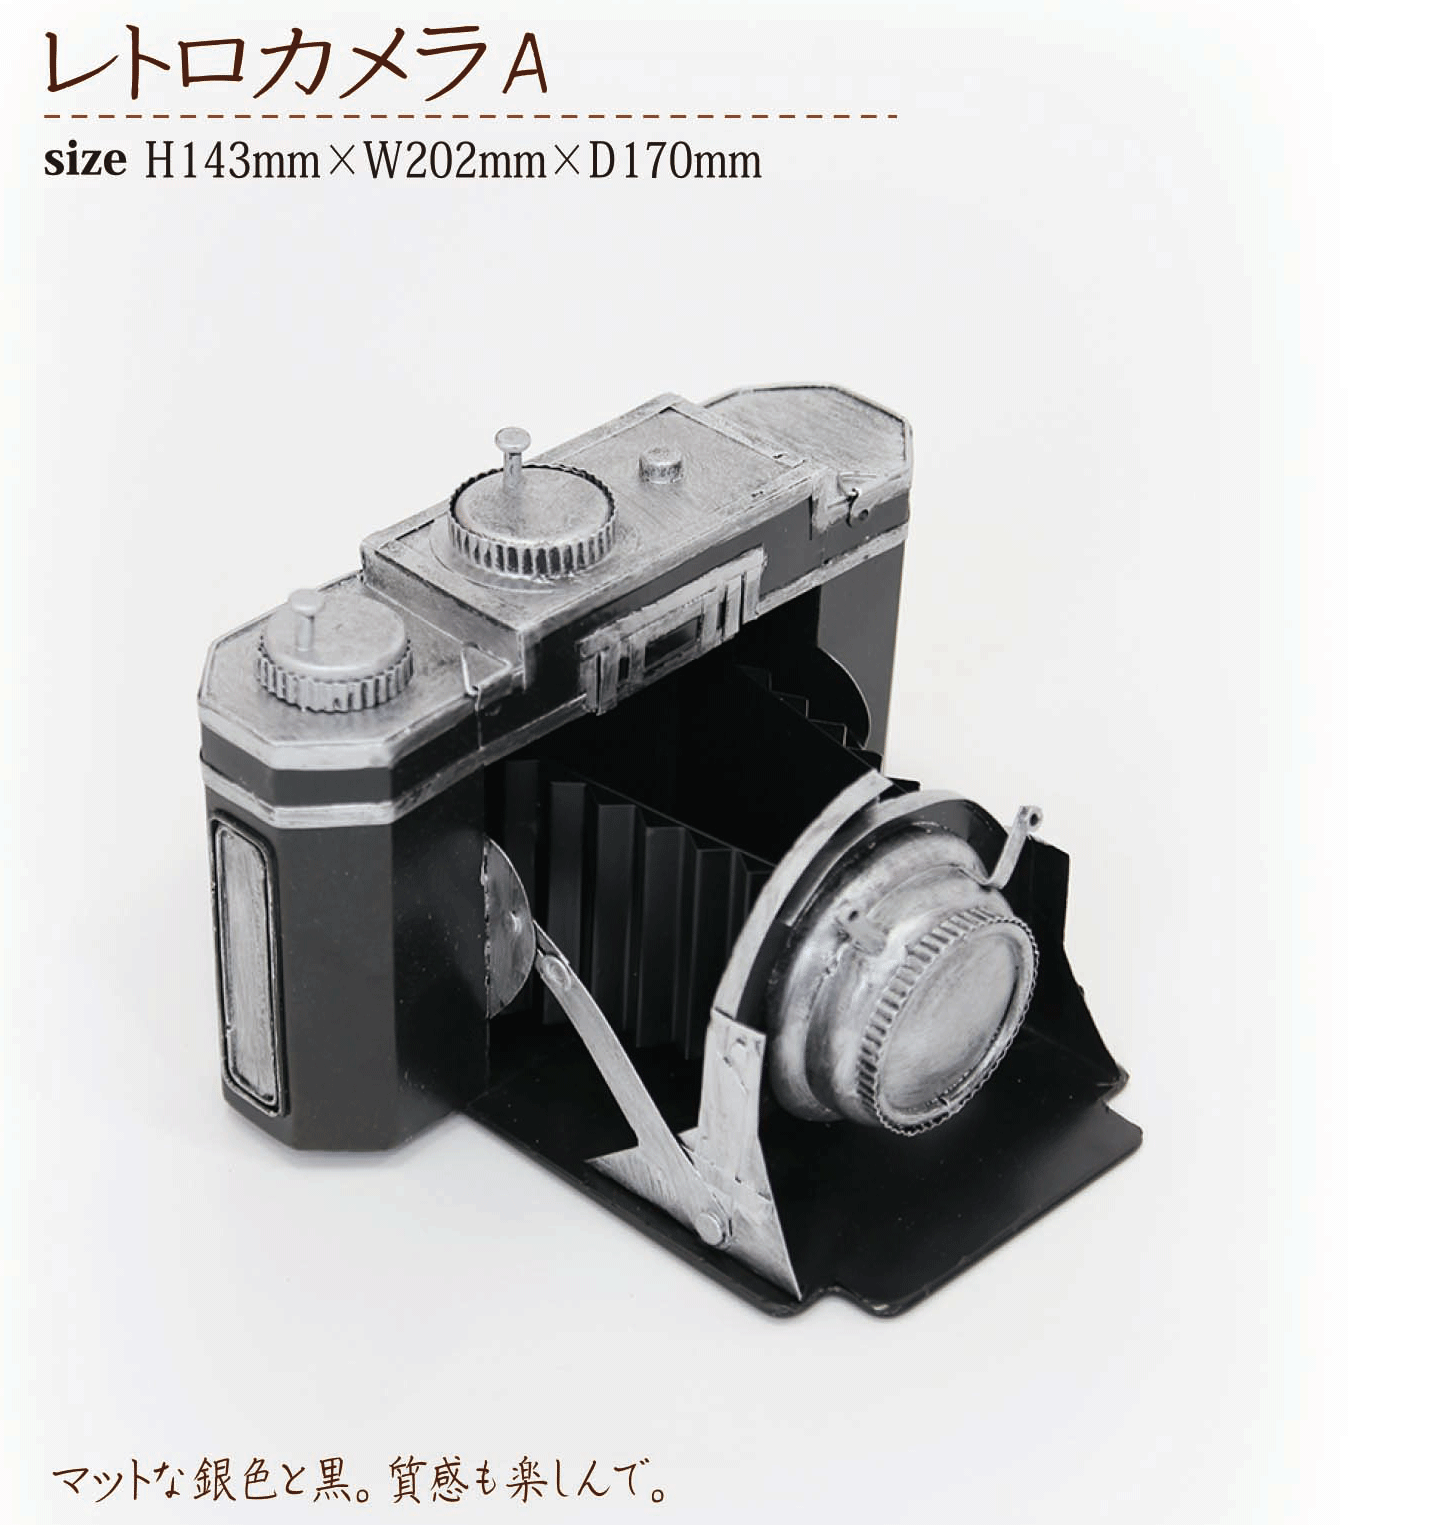 アンティーク風撮影小物レトロカメラ 2種 写真業界特化の法人向けオンラインショッピングサイト Photol Pro フォトルプロ